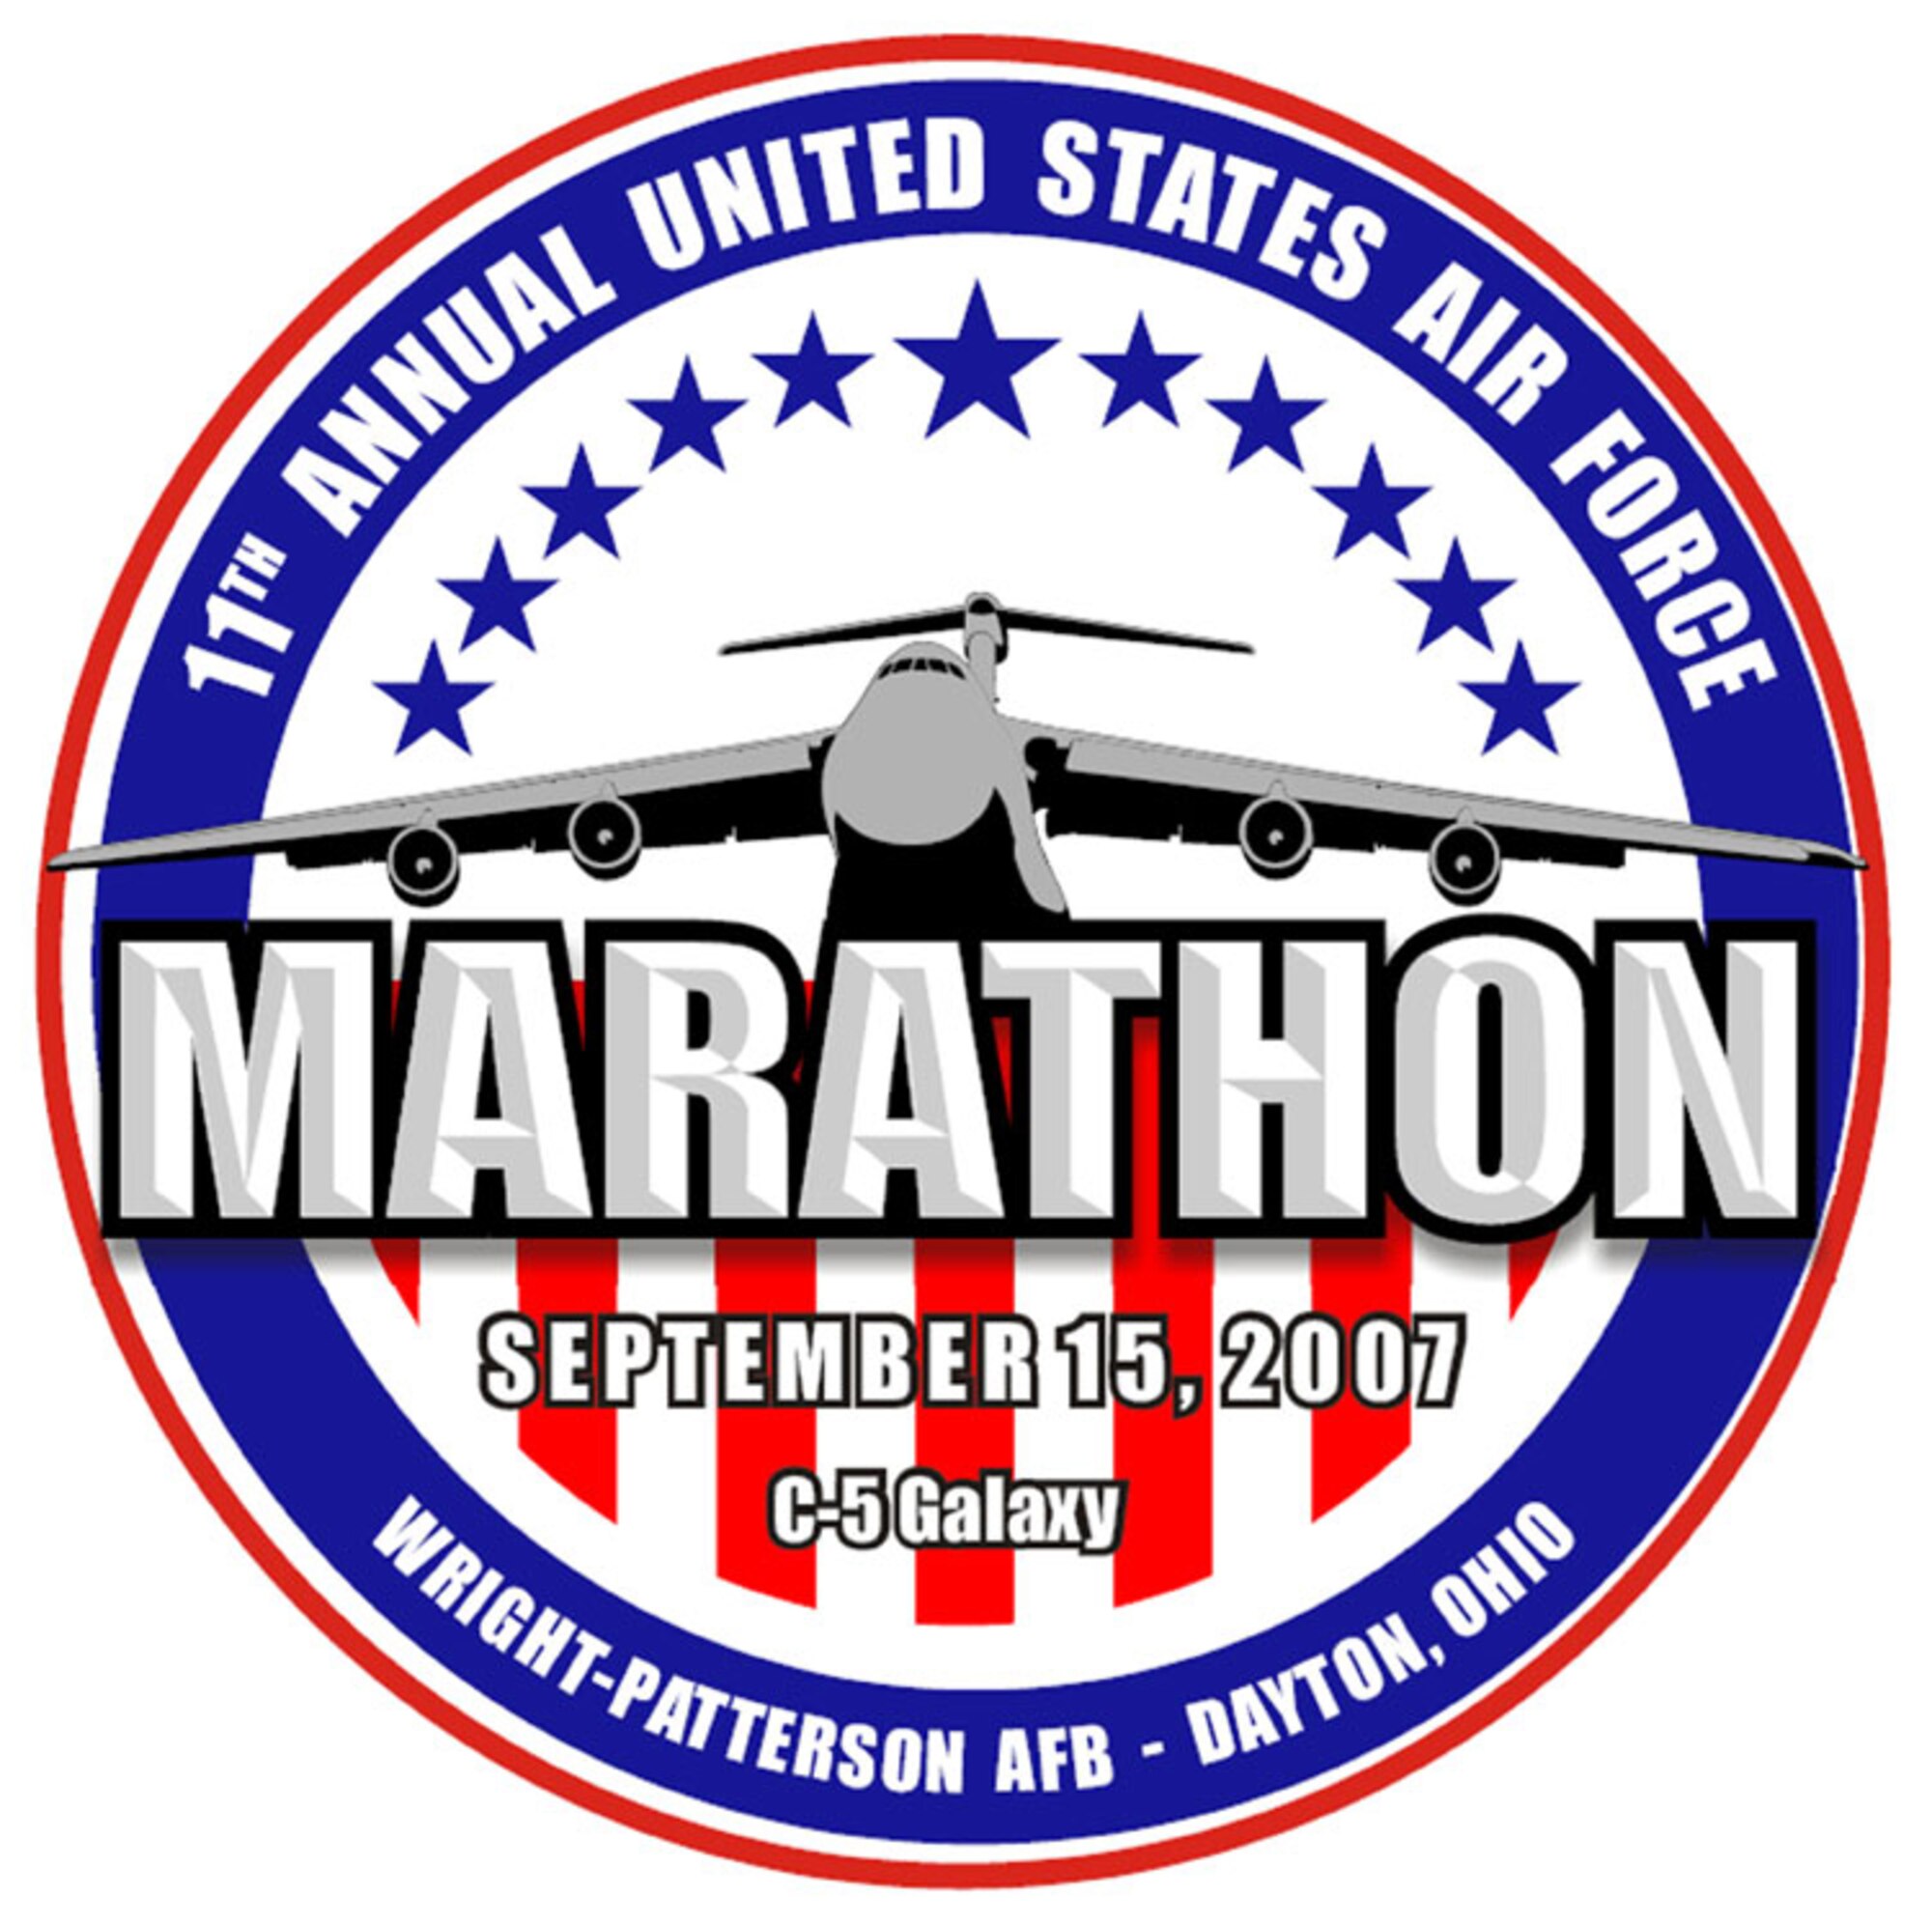 11th Annual United States Air Force Marathon